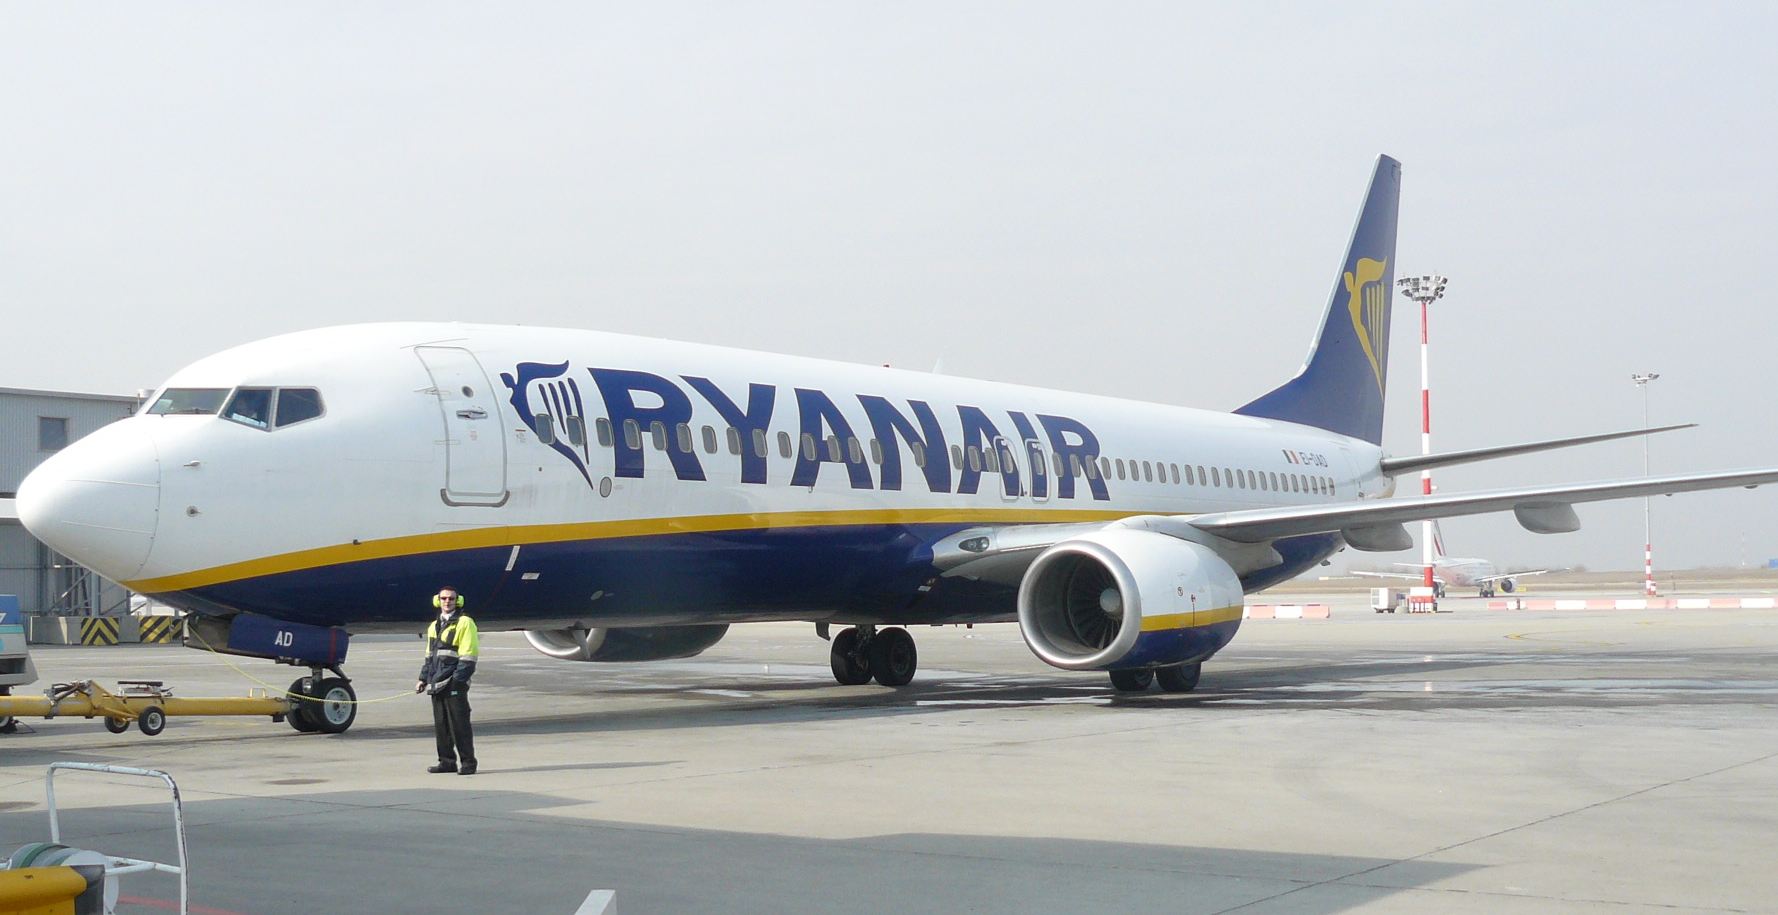 A Ryanair kevesebb vonalat tart fenn Budapestről és kevesebb gépet állomásoztat a repülőtéren